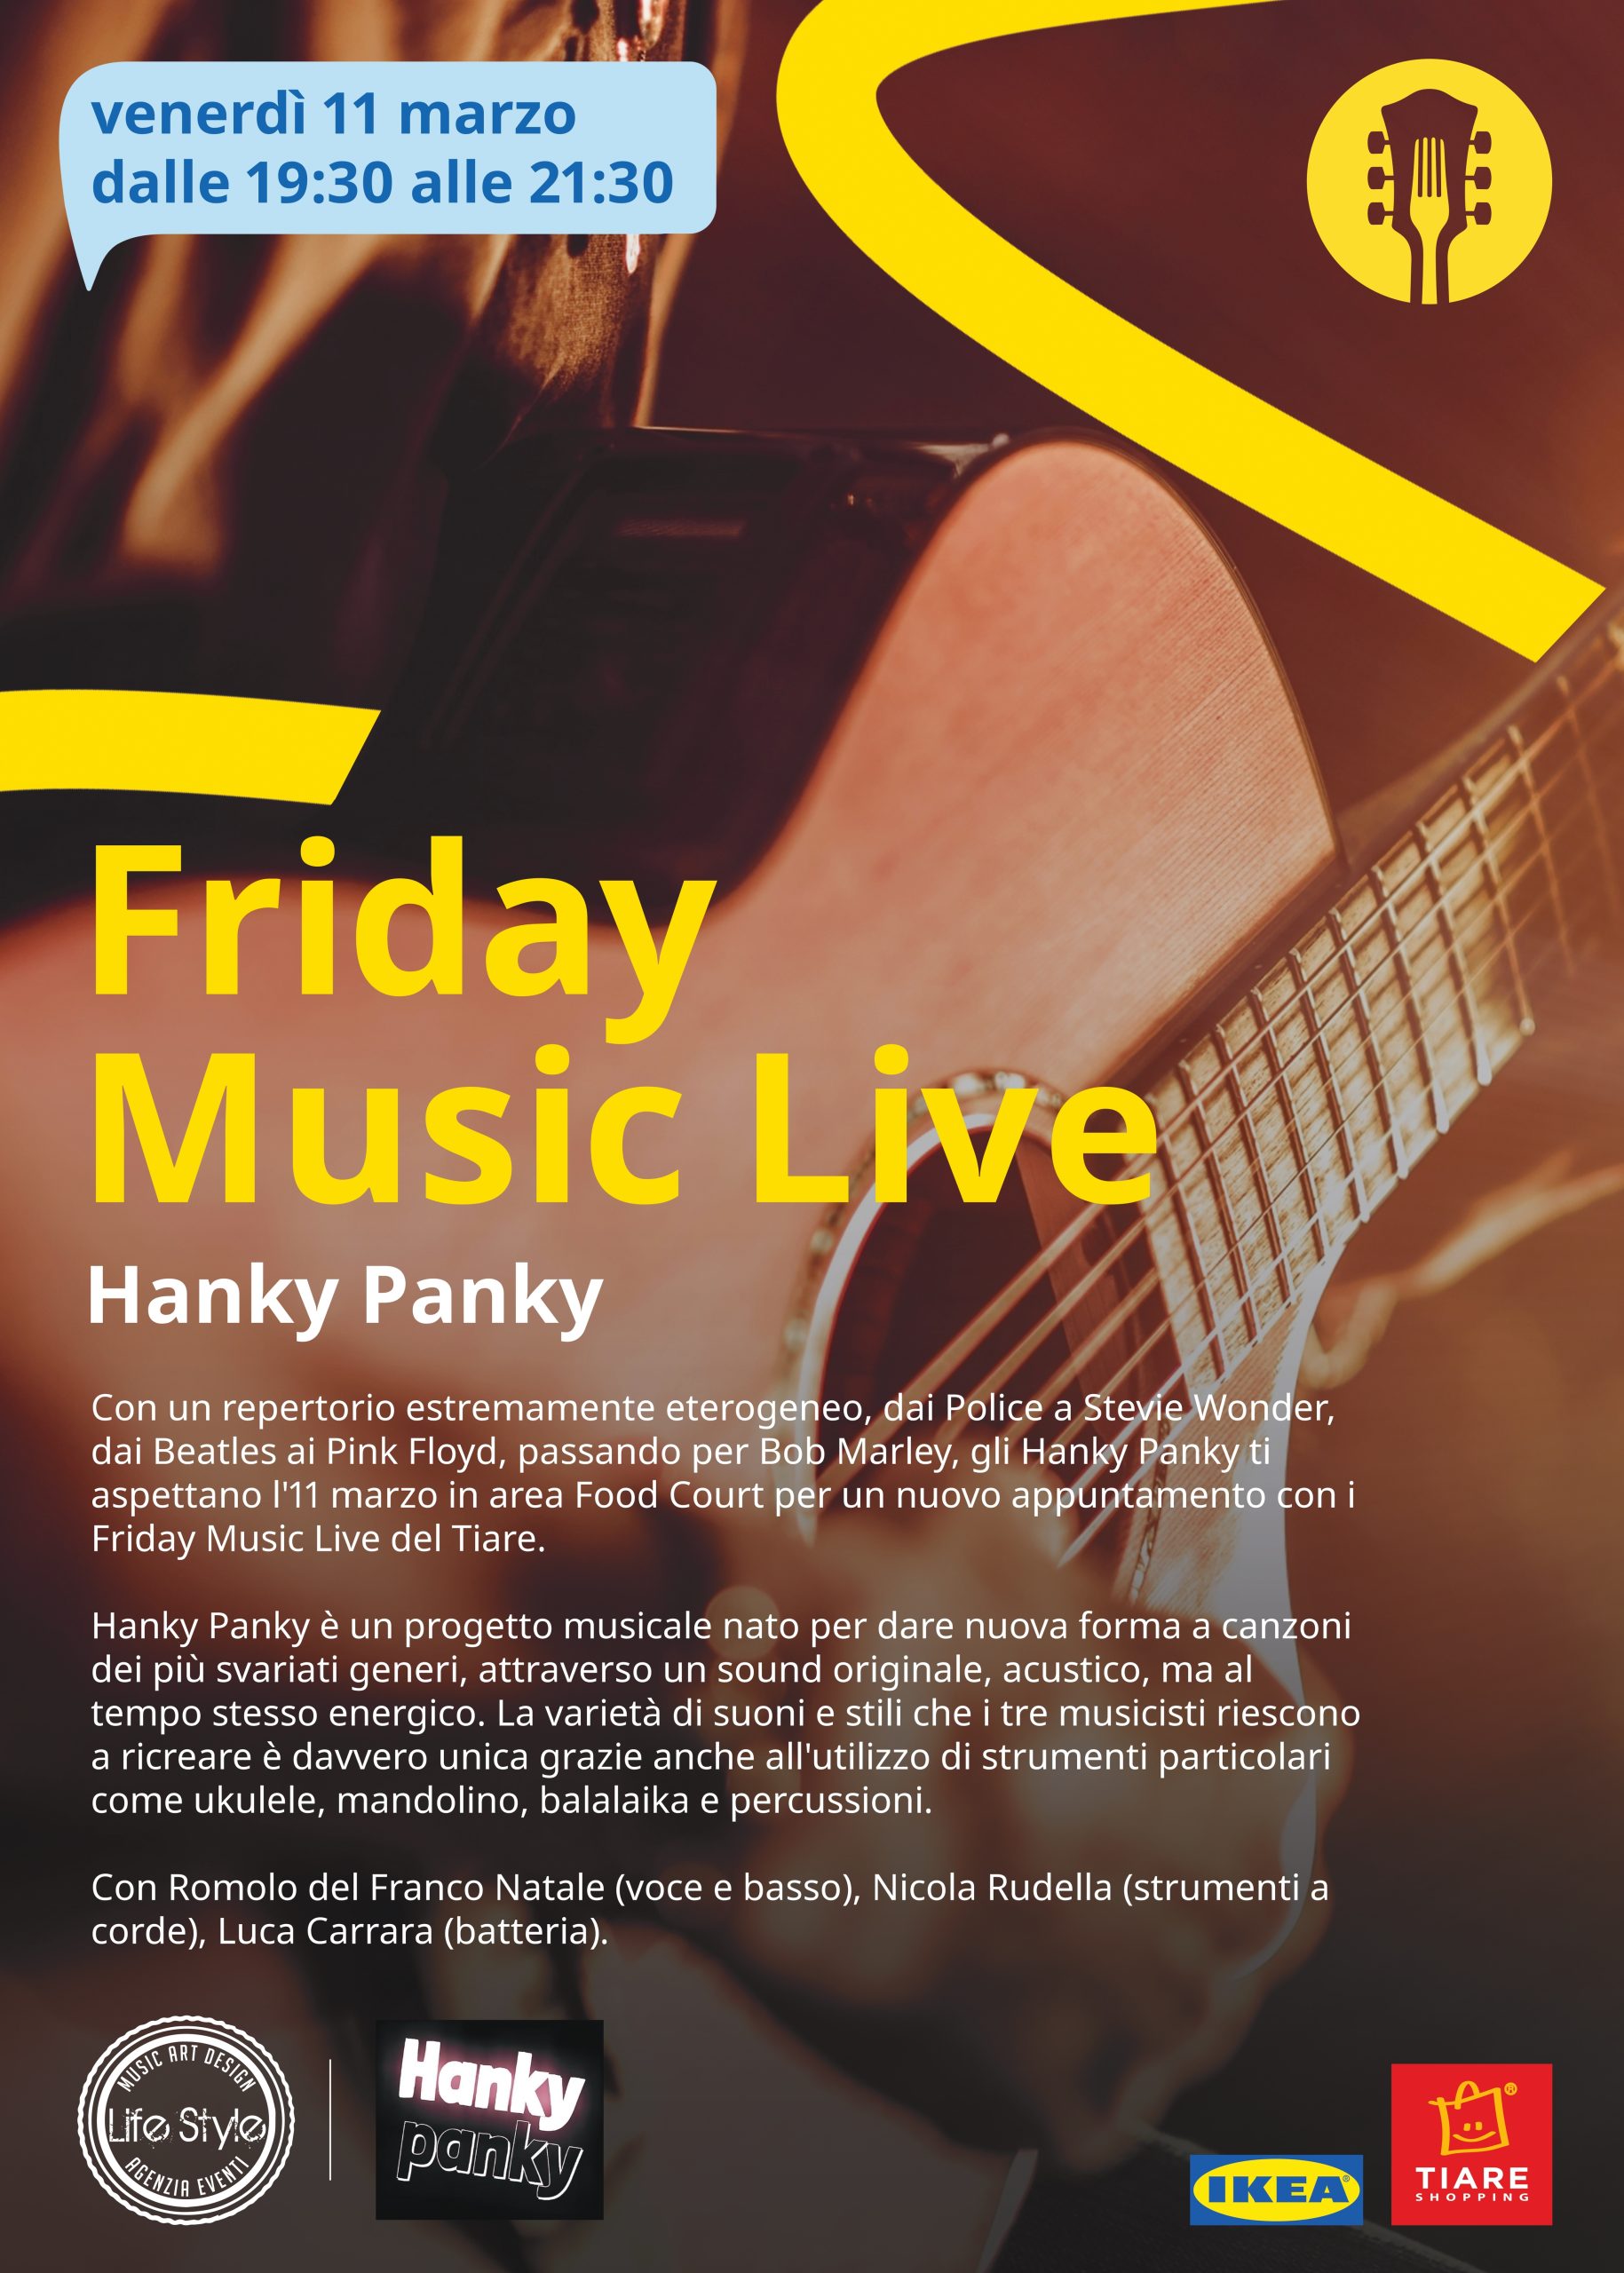 Scopri di più sull'articolo Friday Music Live venerdì 11 marzo con la band Hanky Panky che accompagna la cena alla Food Court del Tiare Shopping di Villesse